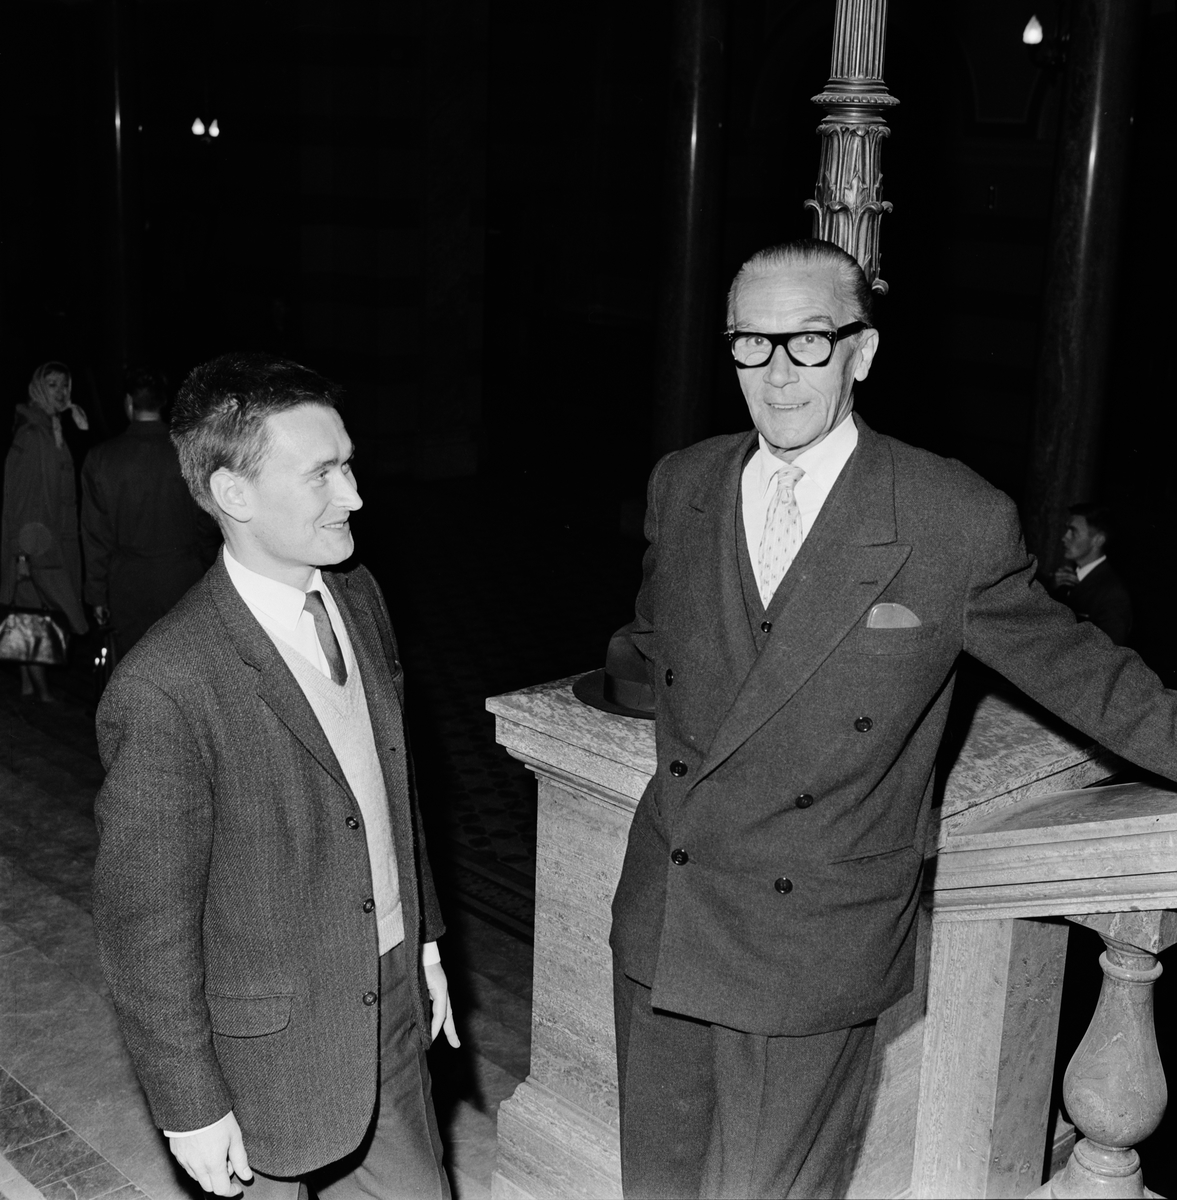 Henrique "Piraten" Galvão (till höger), Universitetshuset, Uppsala 1961